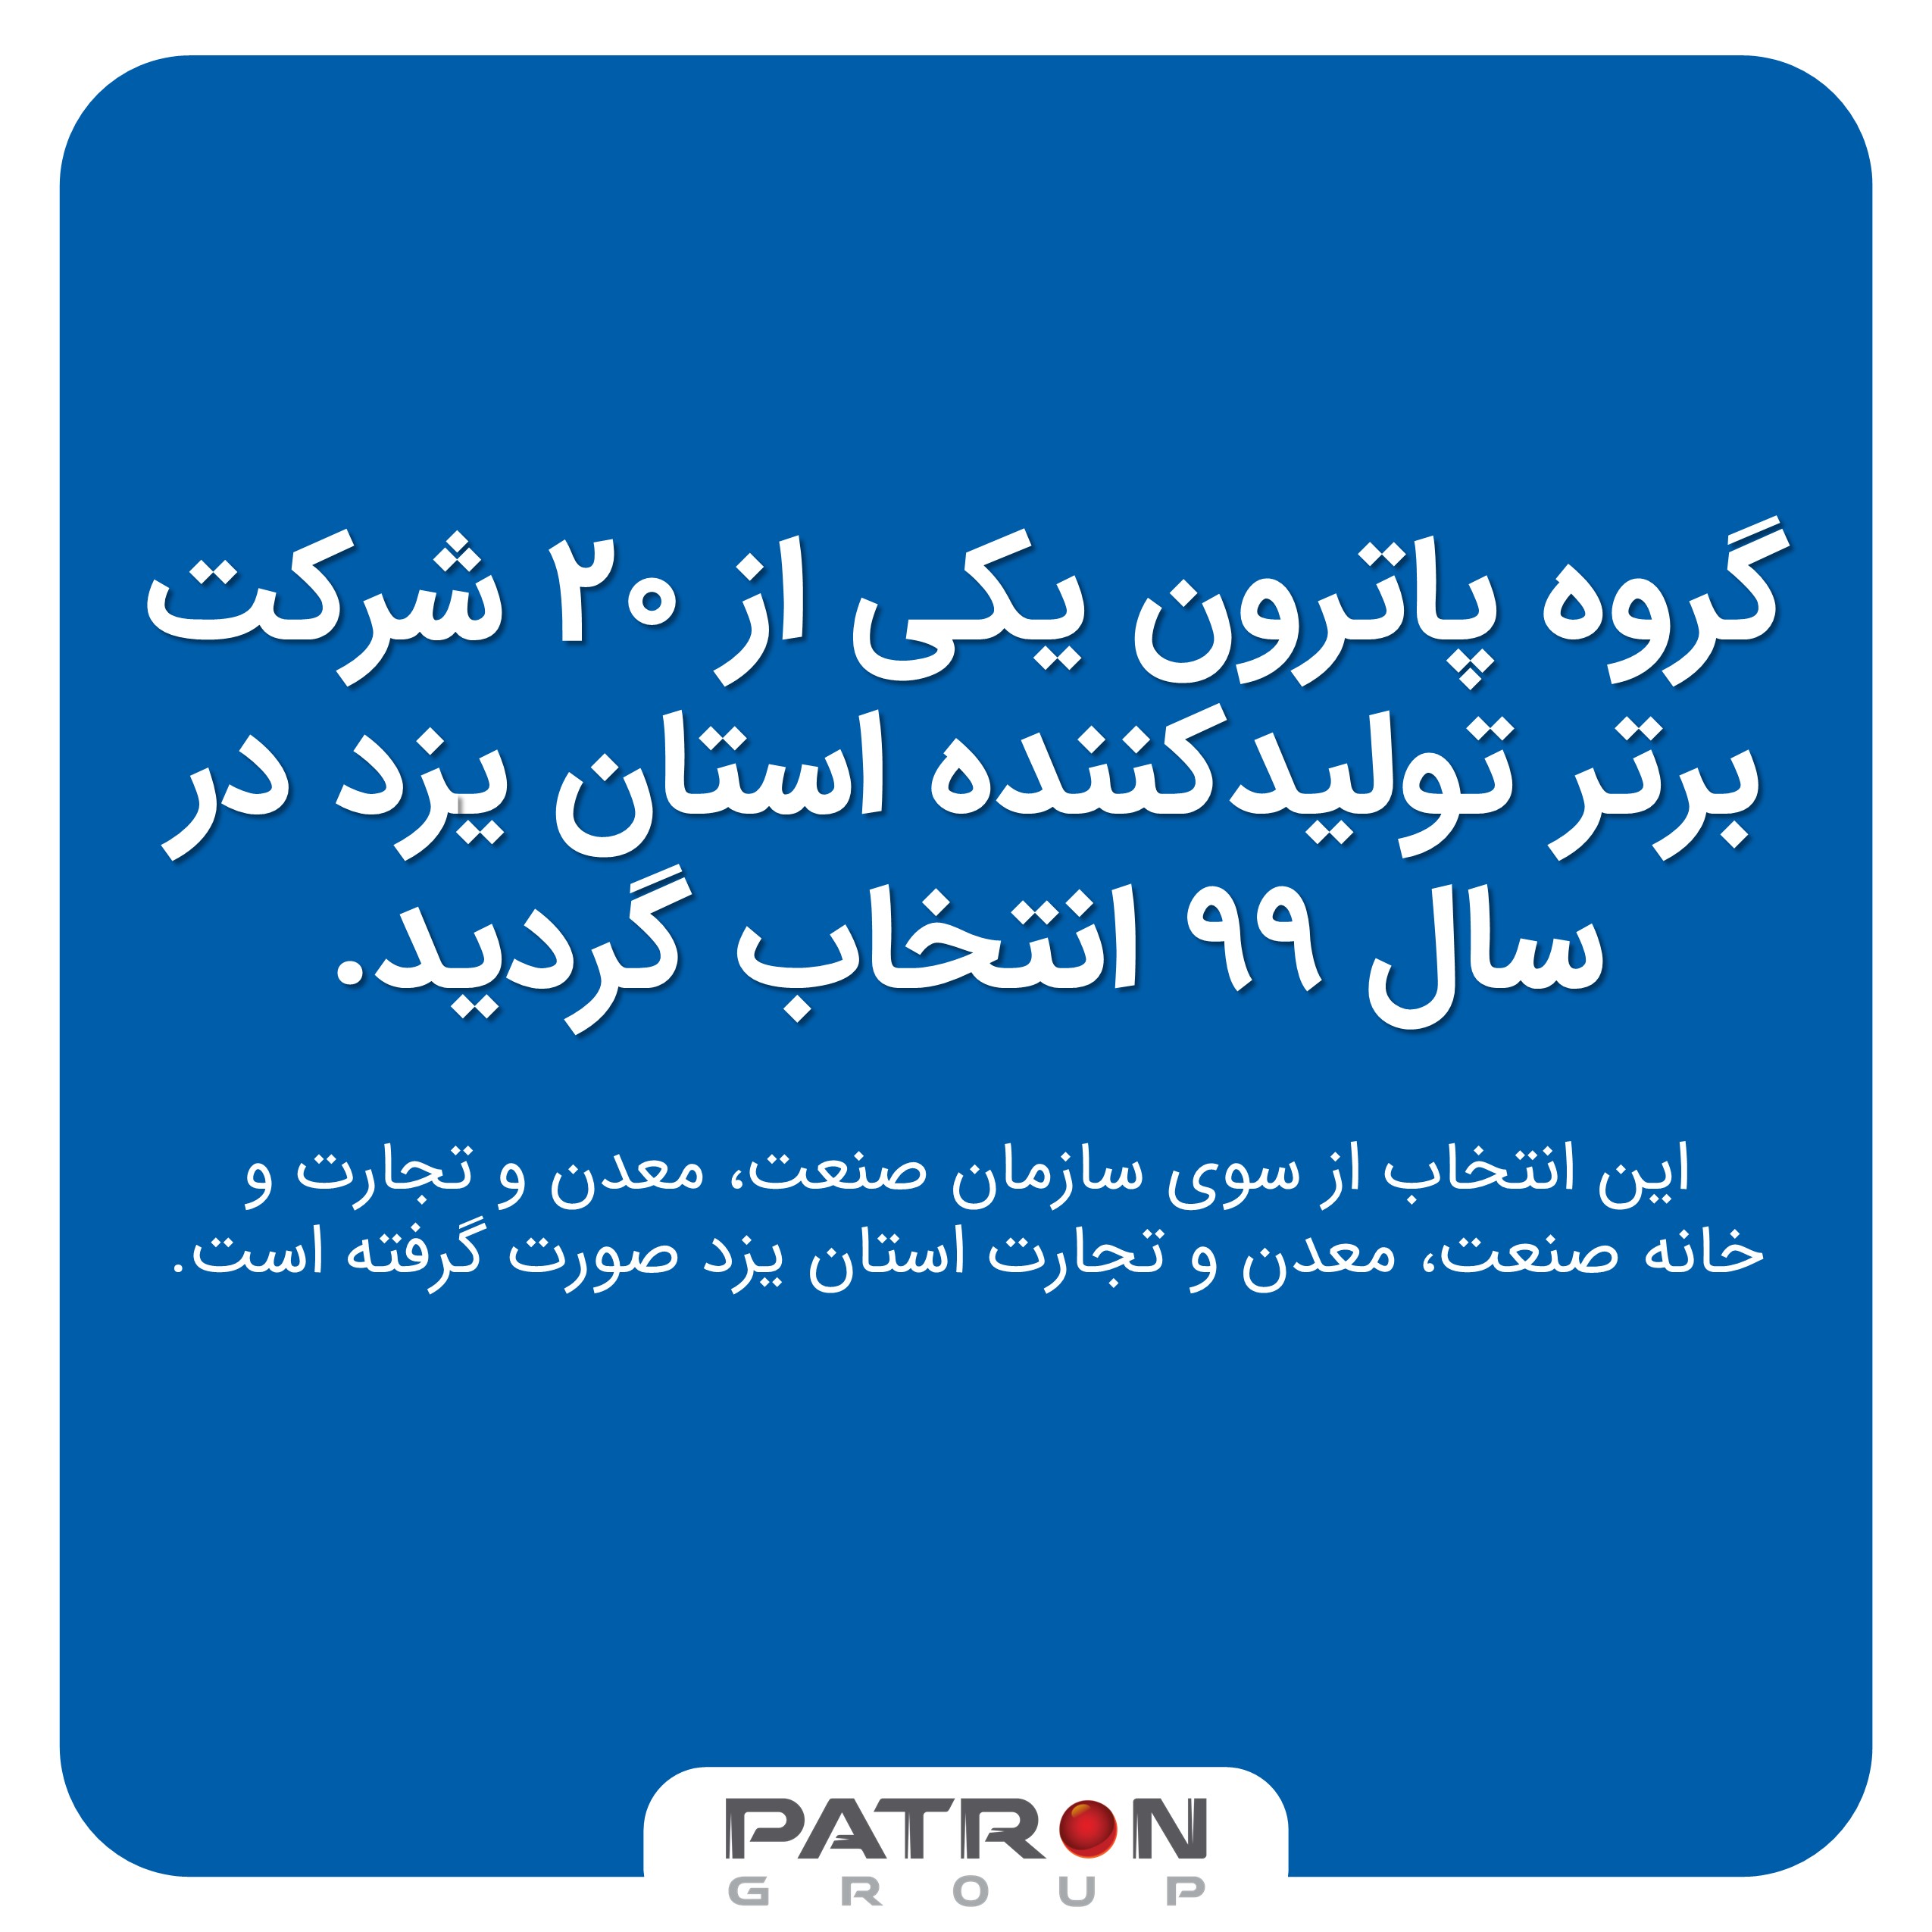 انتخاب پاترون بعنوان یکی از 20 تولیدکننده برتر استان یزد